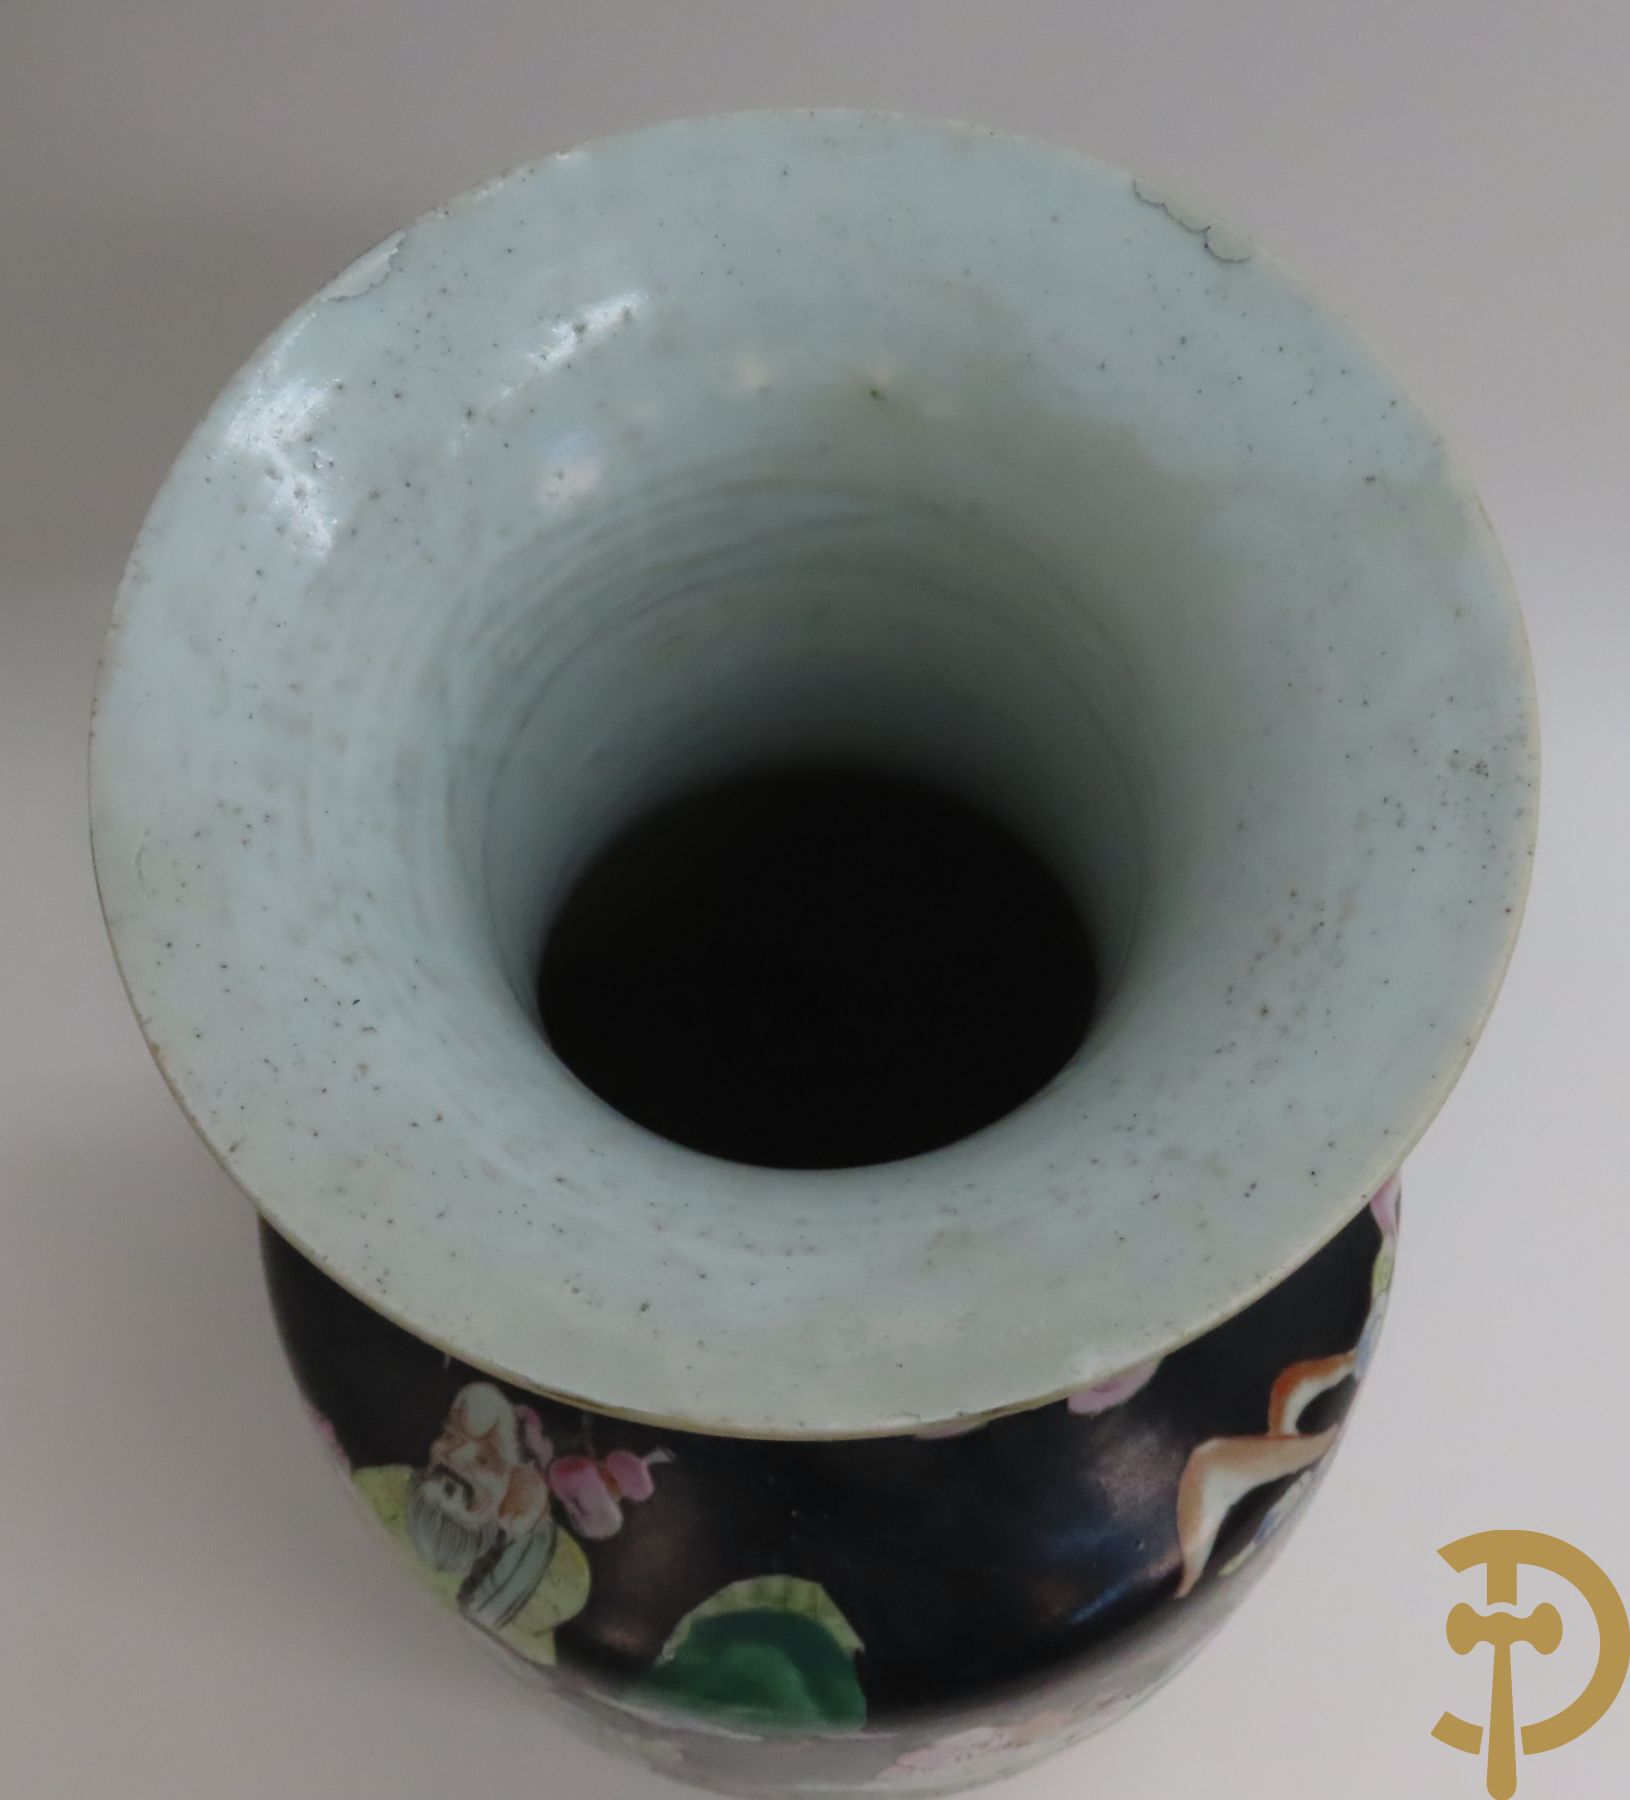 Chinese porseleinen vaas met geanimeerd decor op zwarte fond + Chinese porseleinen vaas met krijgerdecor + Chinese porseleinen vaas met landschaps- en natuurdecor